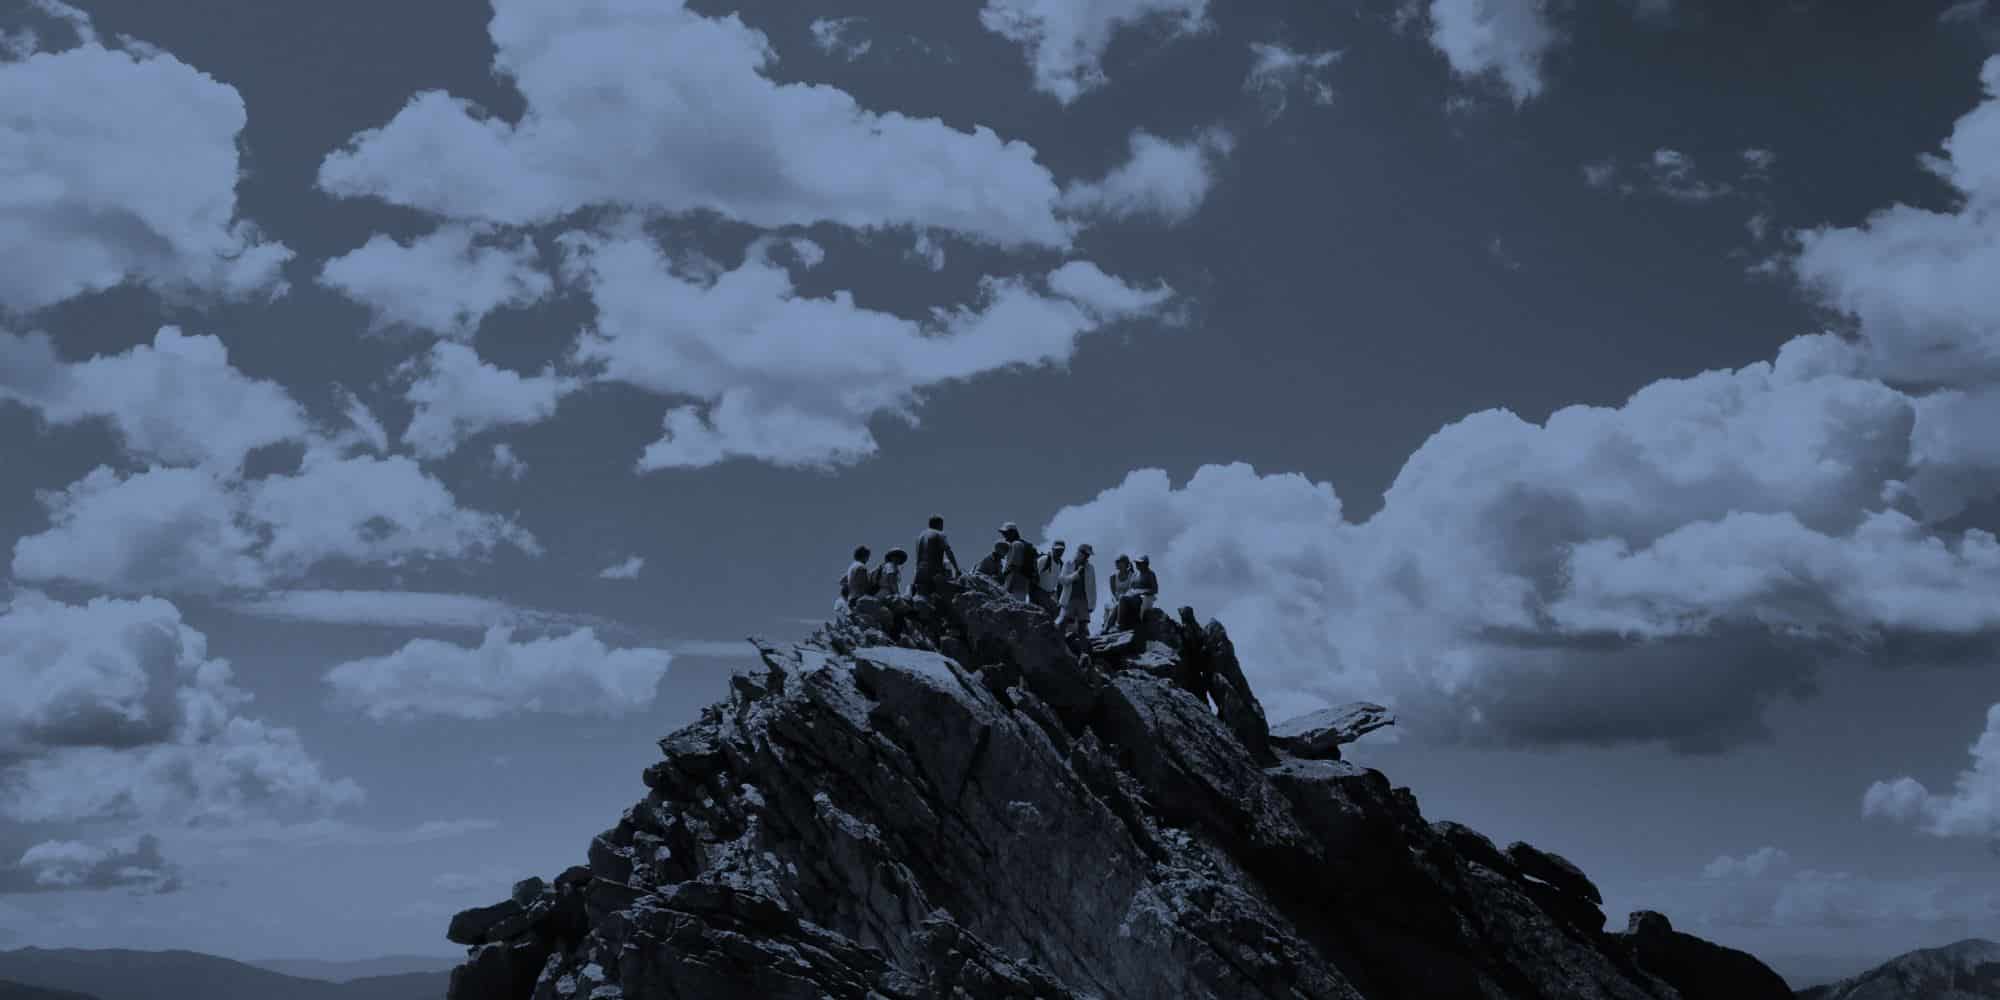 mehrere Personen sitzen auf einem Berggipfel / Führung durch OKR (Objectives and Key Results)